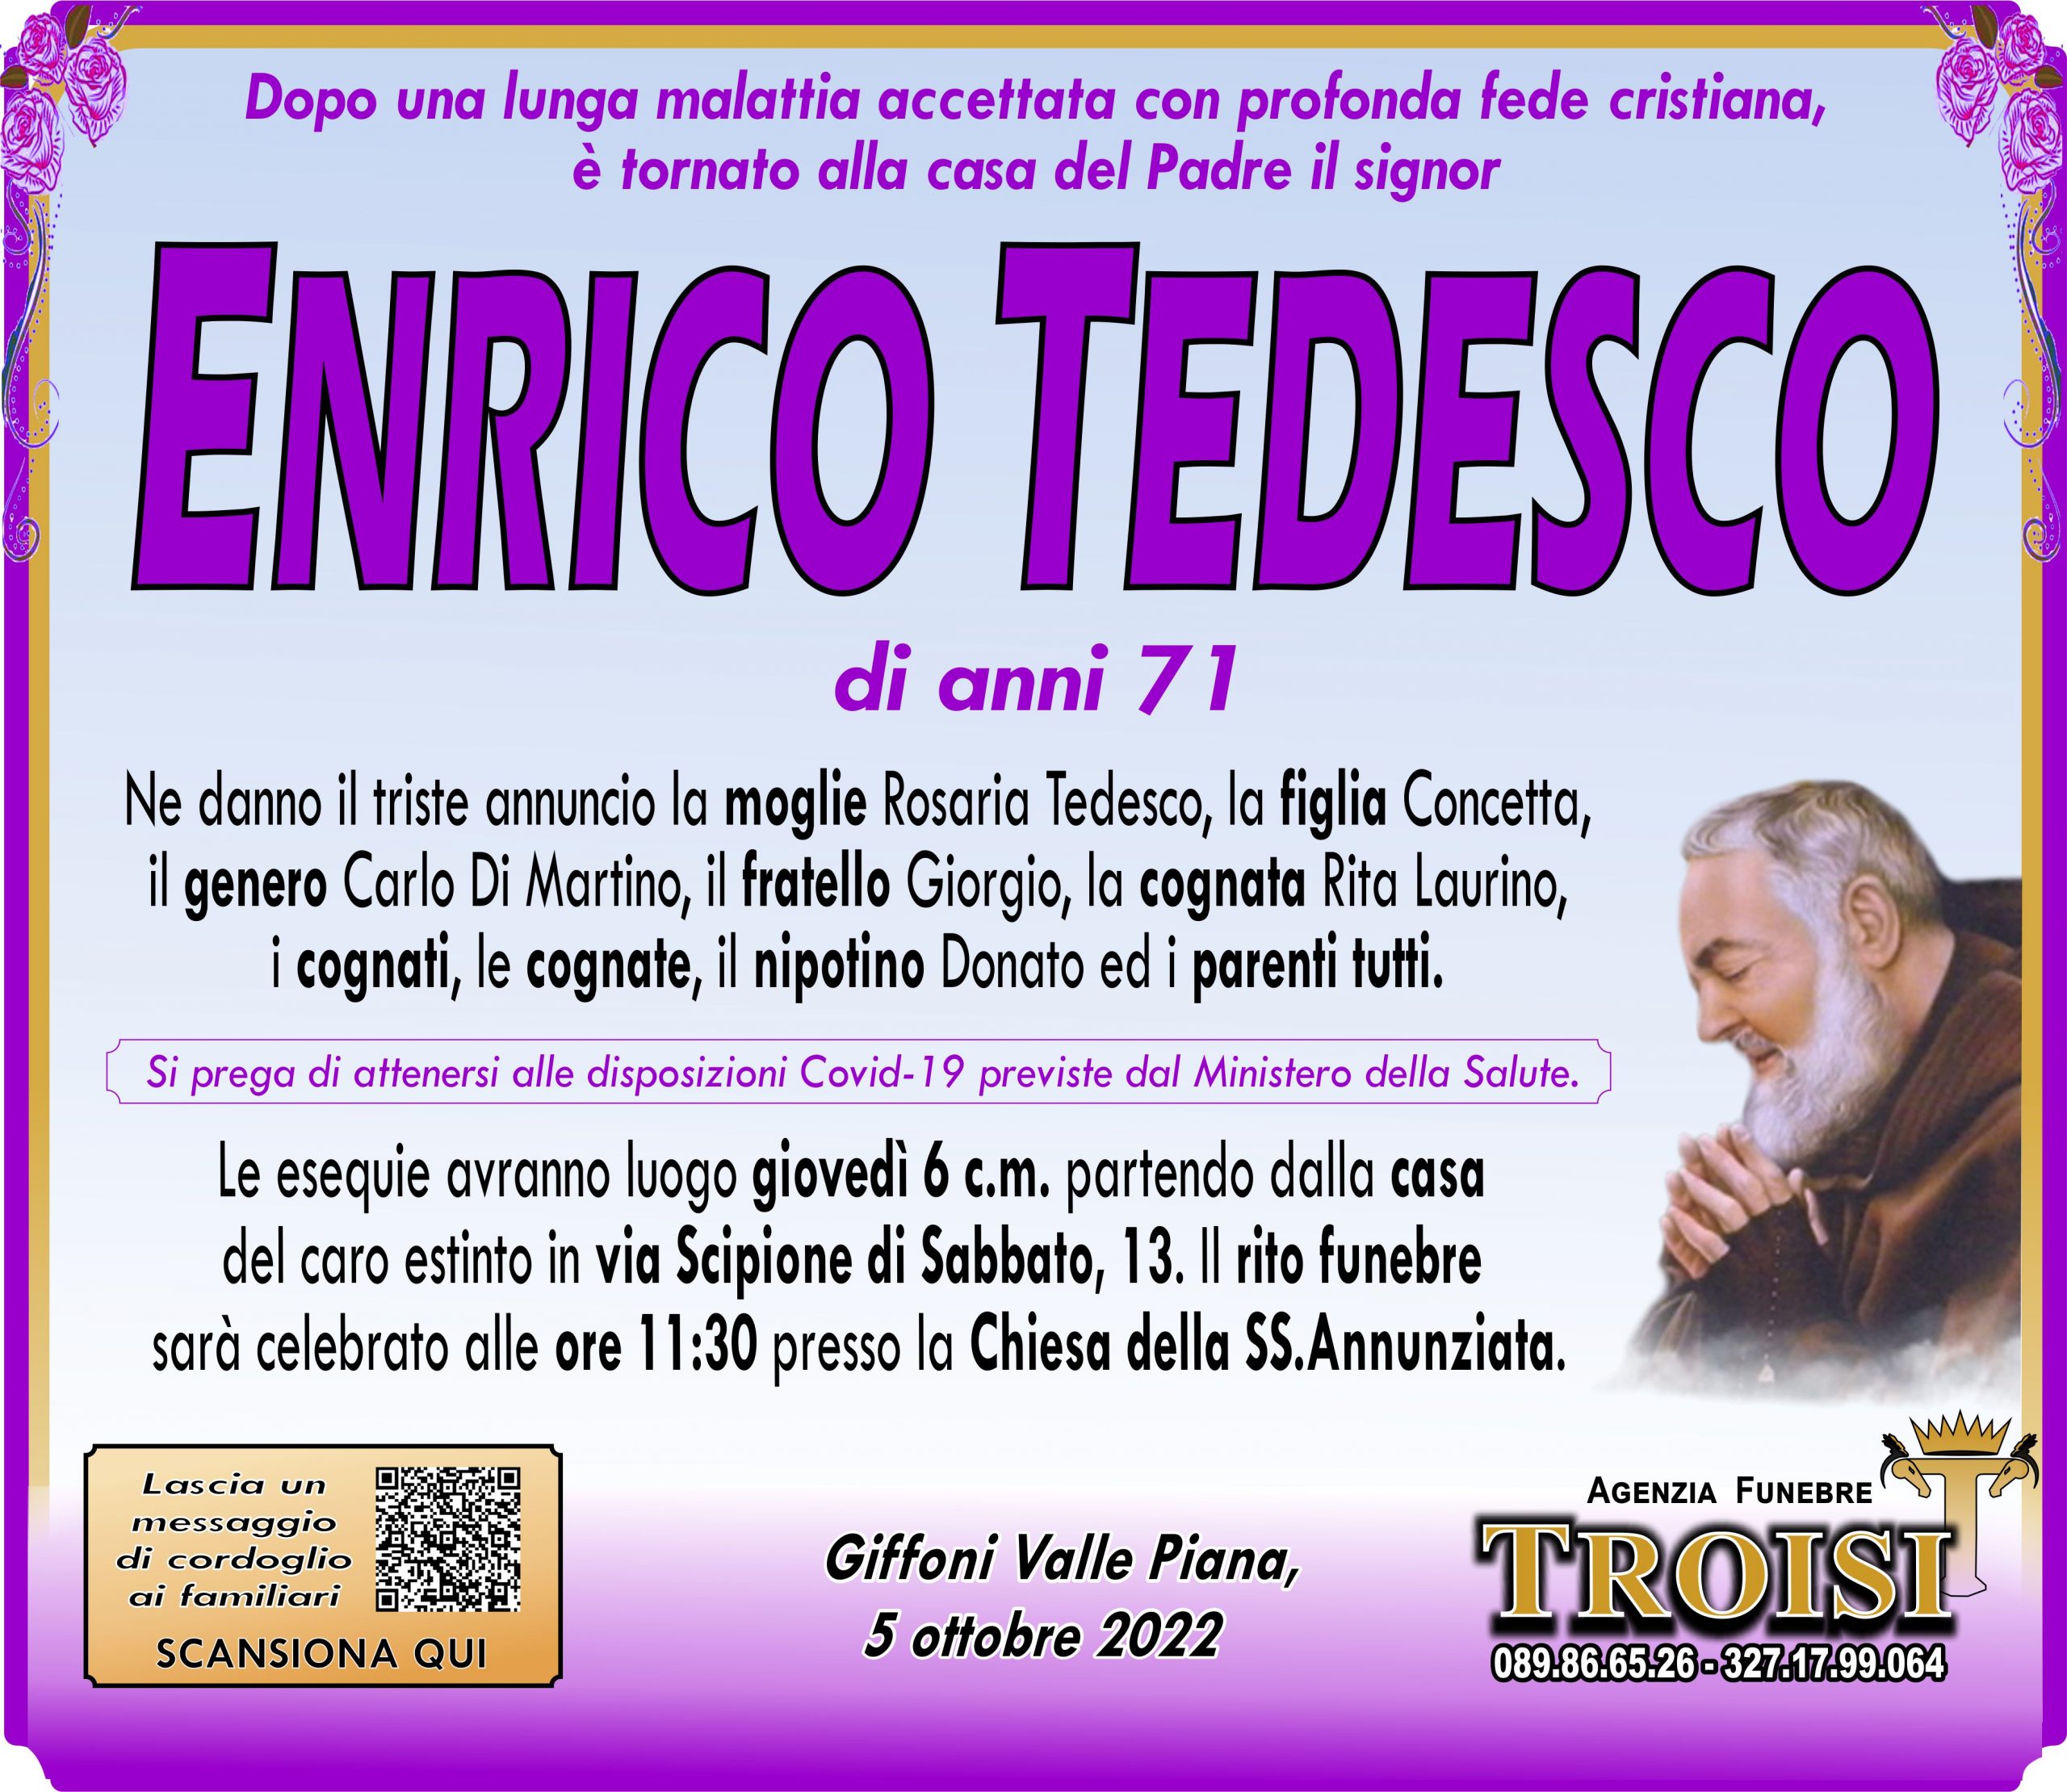 ENRICO TEDESCO